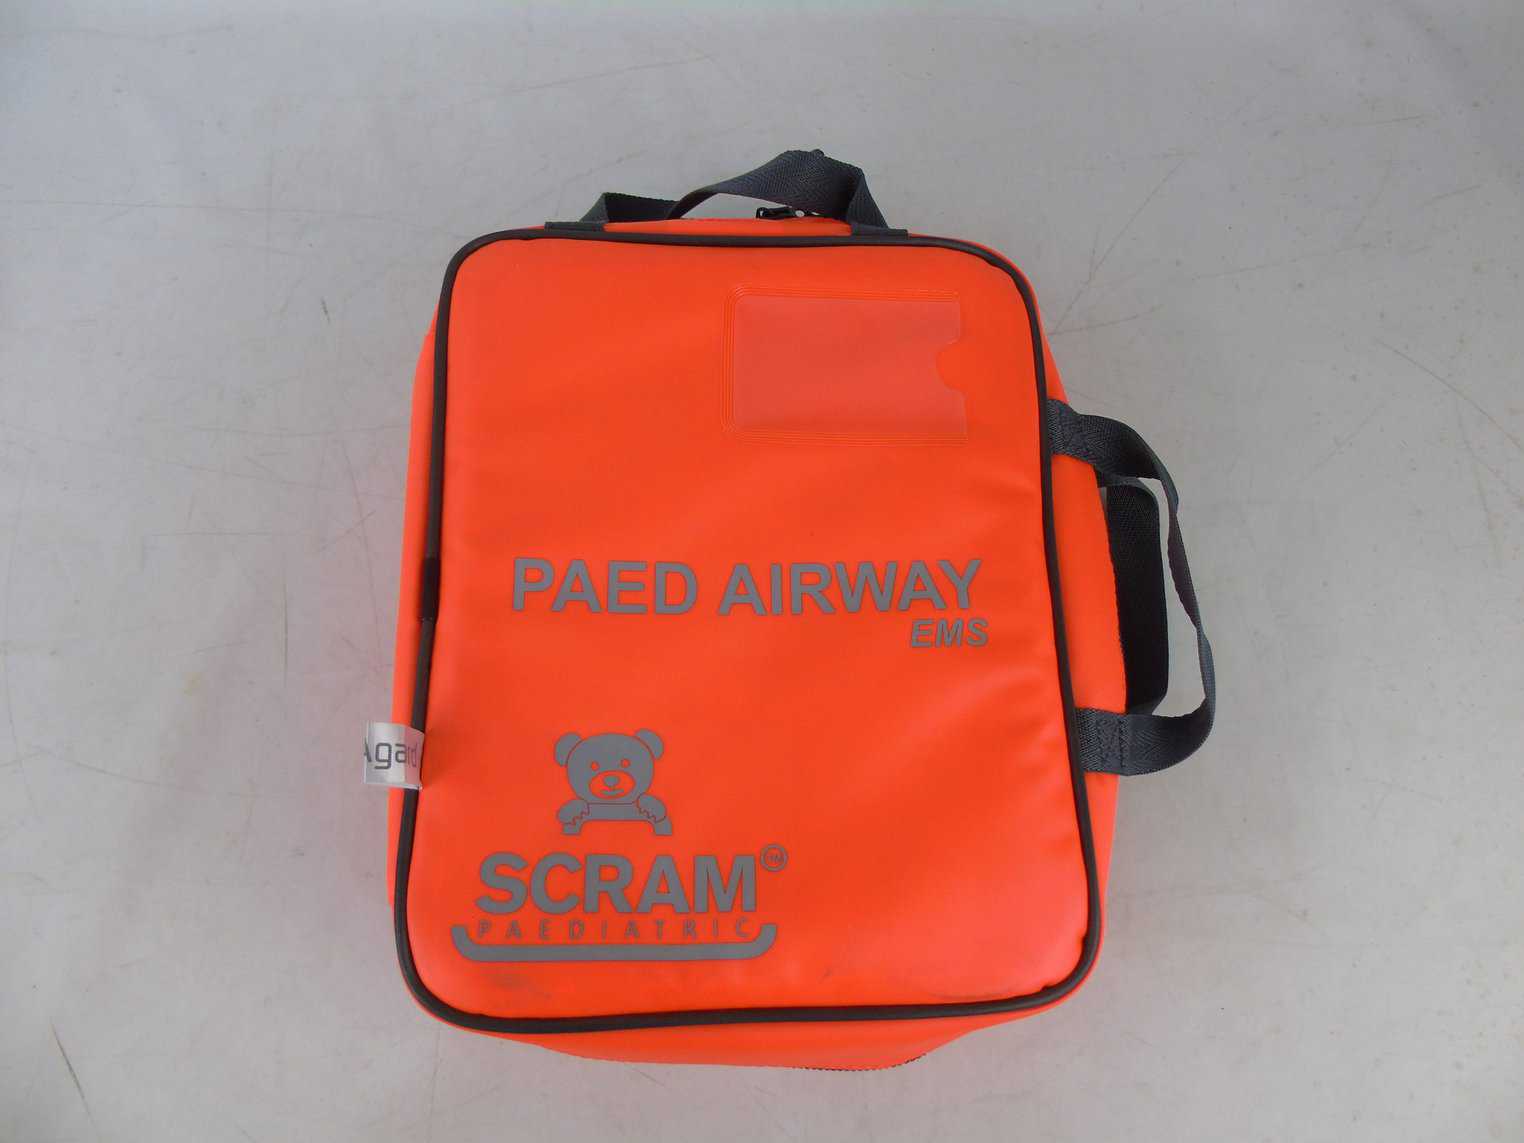 PAED EMS SCRAM Bag - Ex Demo Sample